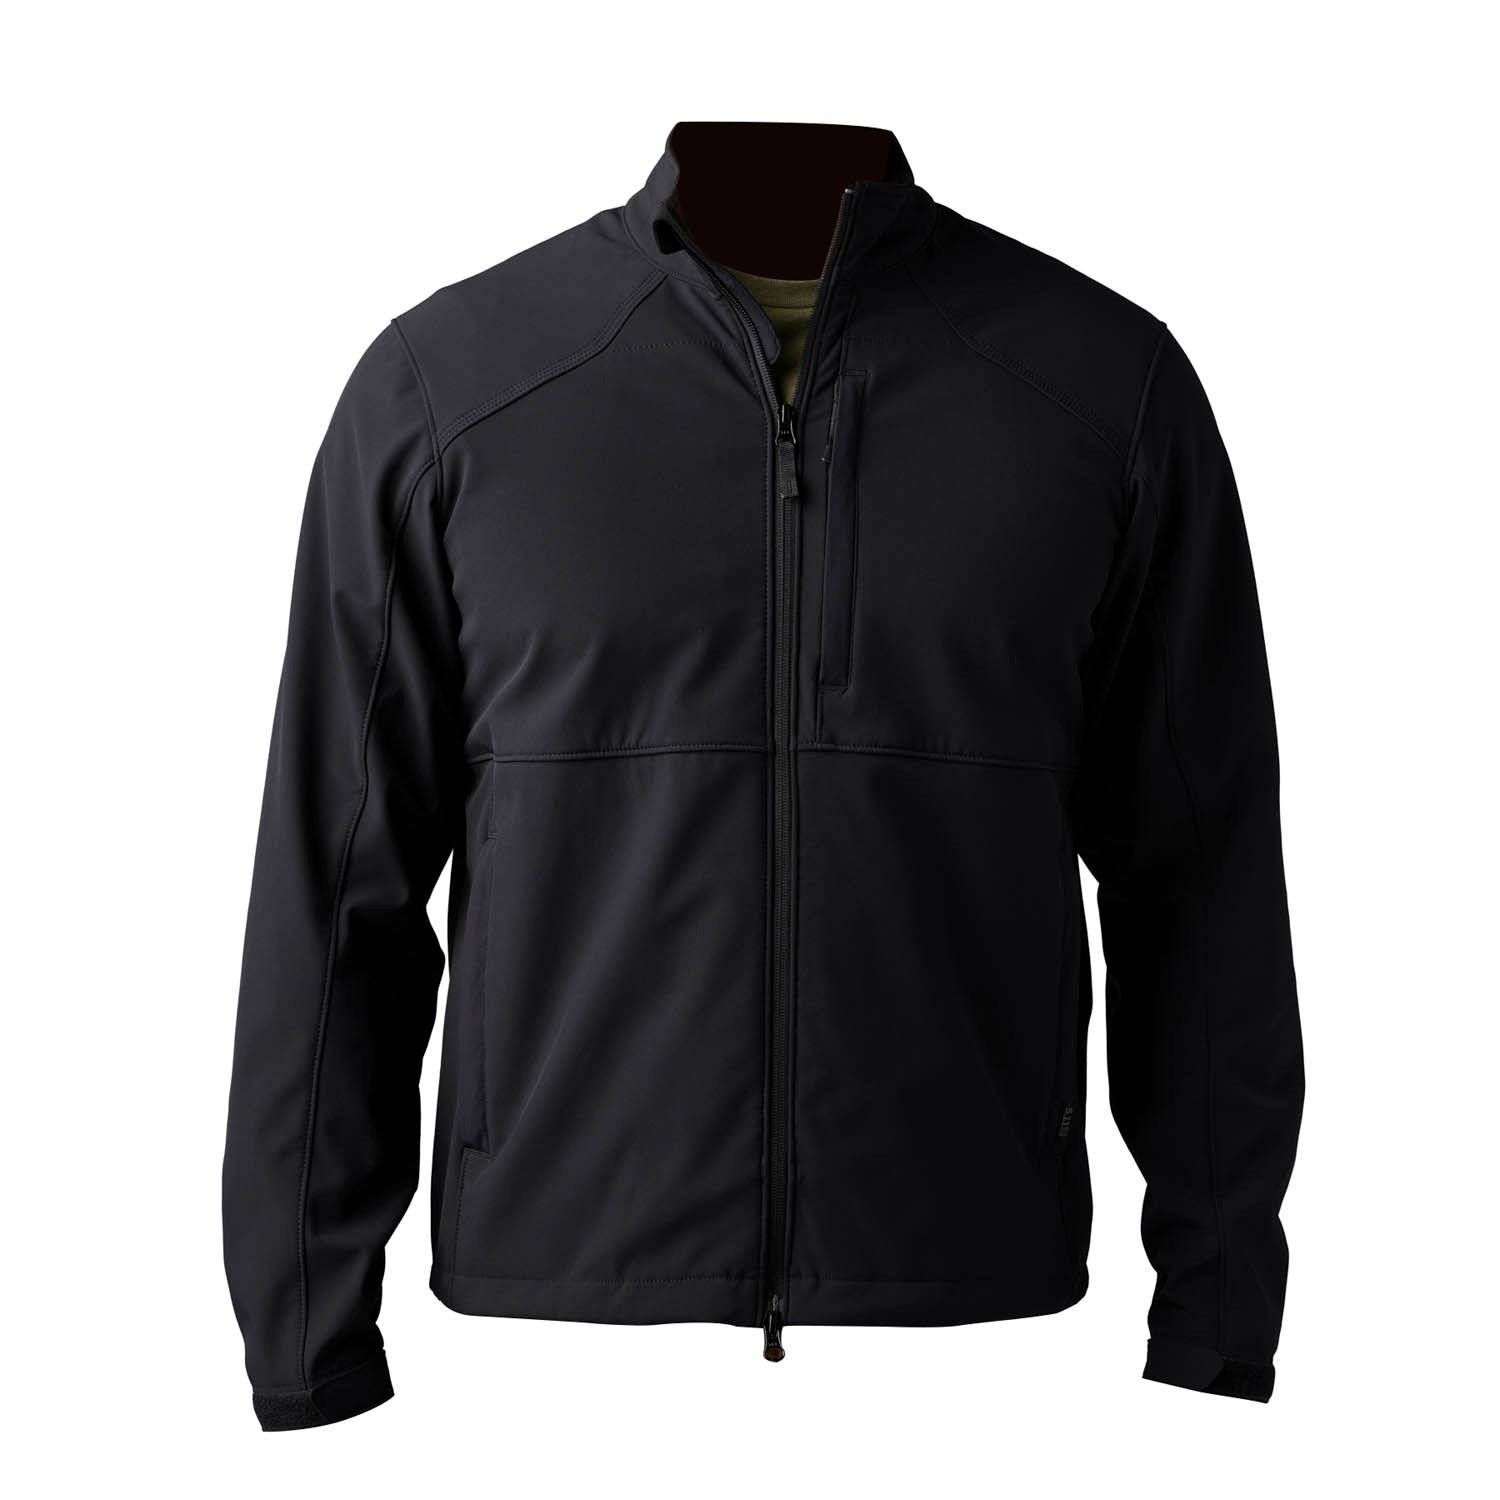 Shop 5.11 Tactical Outerwear, Duty Jackets, Vests & Rainwear